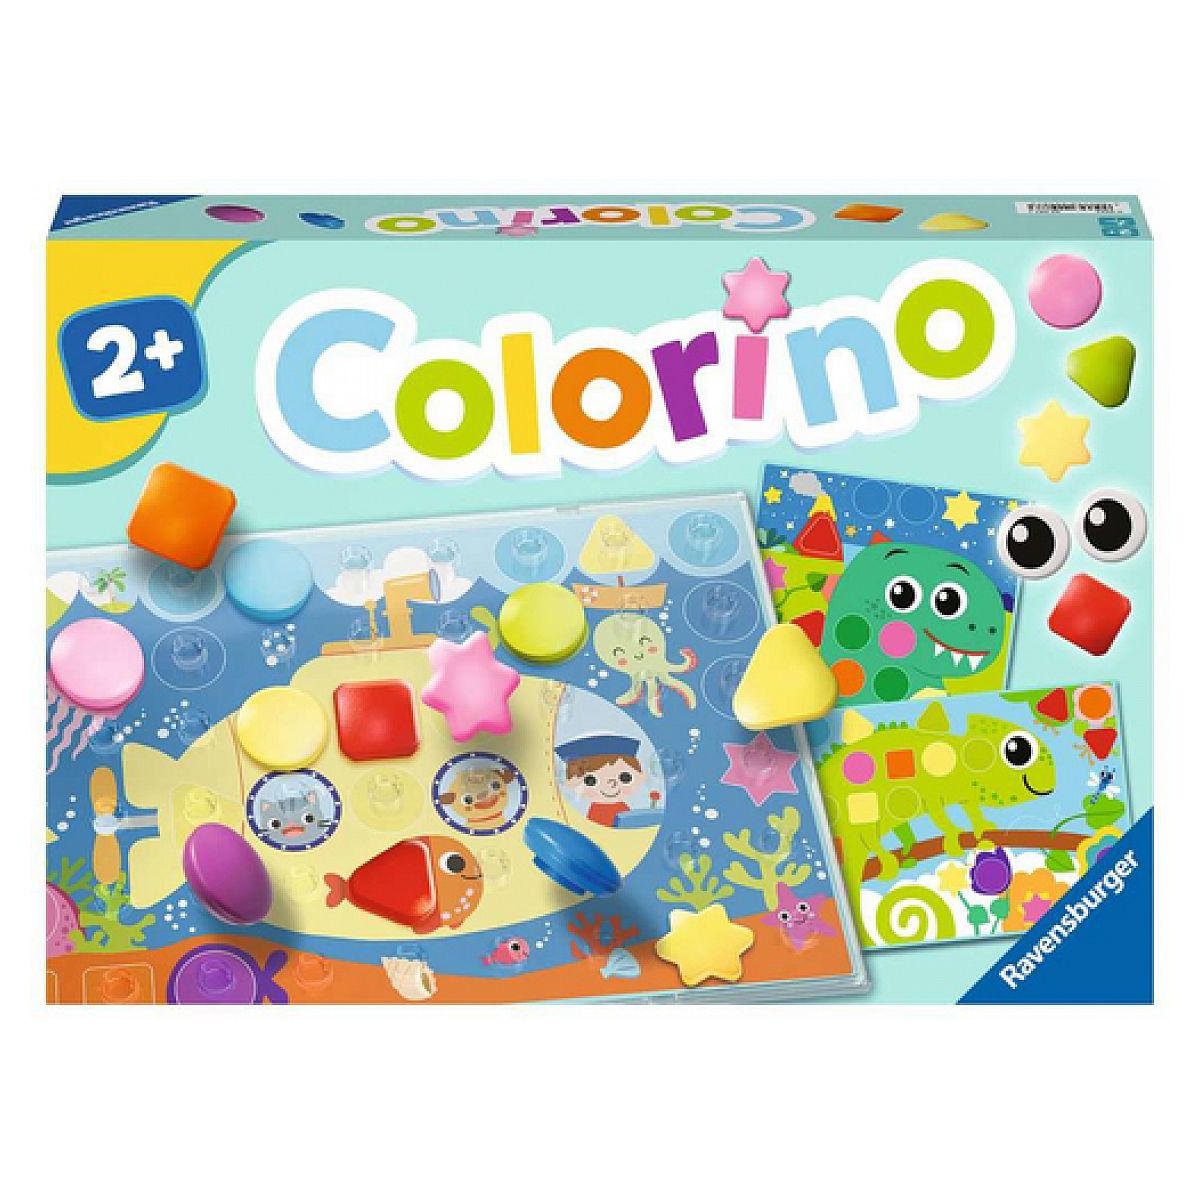 Colorino - Jeu éducatif - Apprentissage des couleurs - Activités